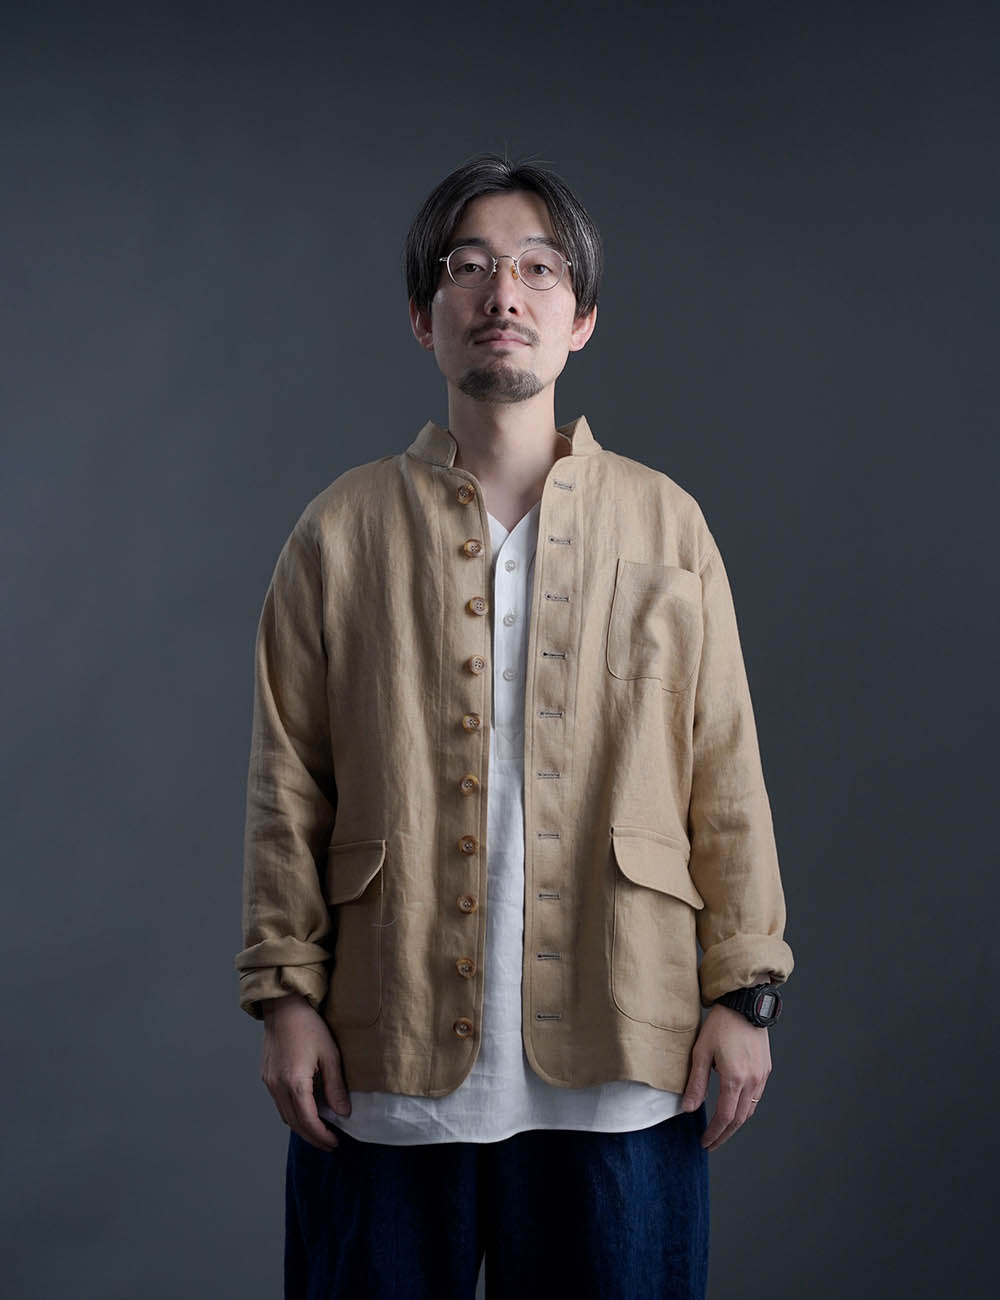 【プレミアム】Linen Jacket フレンチ ヴィンテージ ジャケット / シャンパン h040b-cmp3